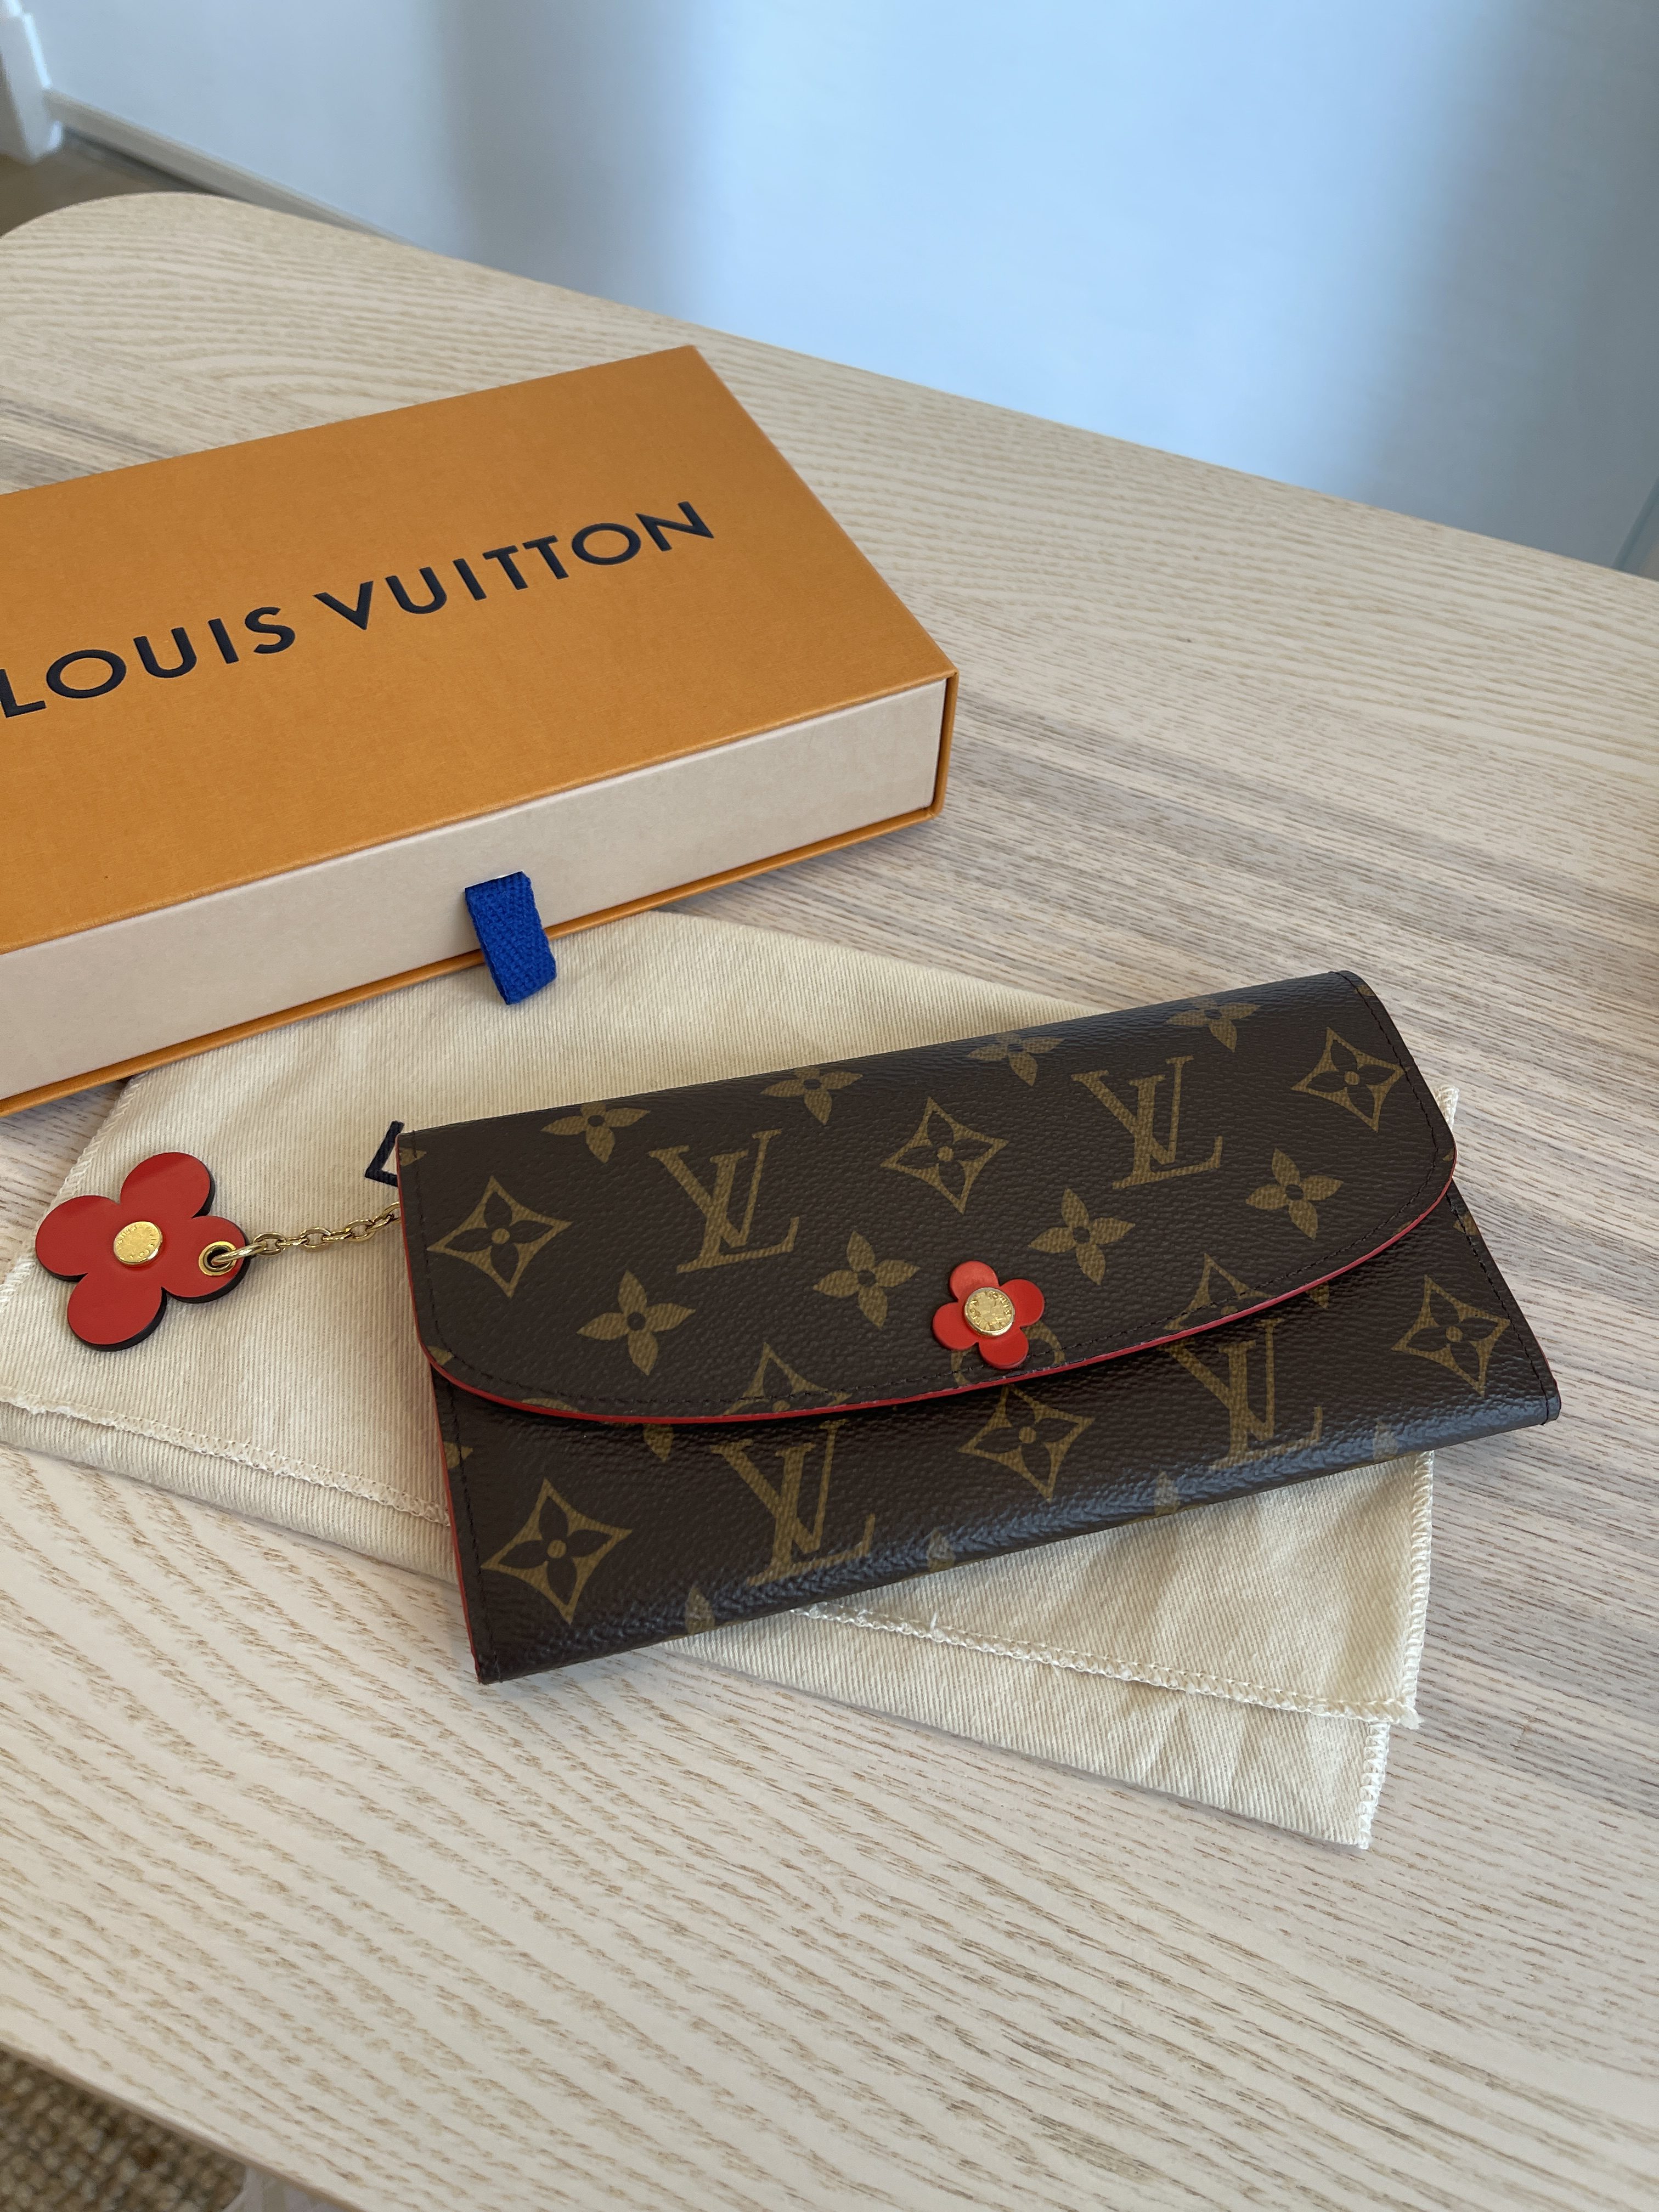 Louis Vuitton Emilie Wallet Review